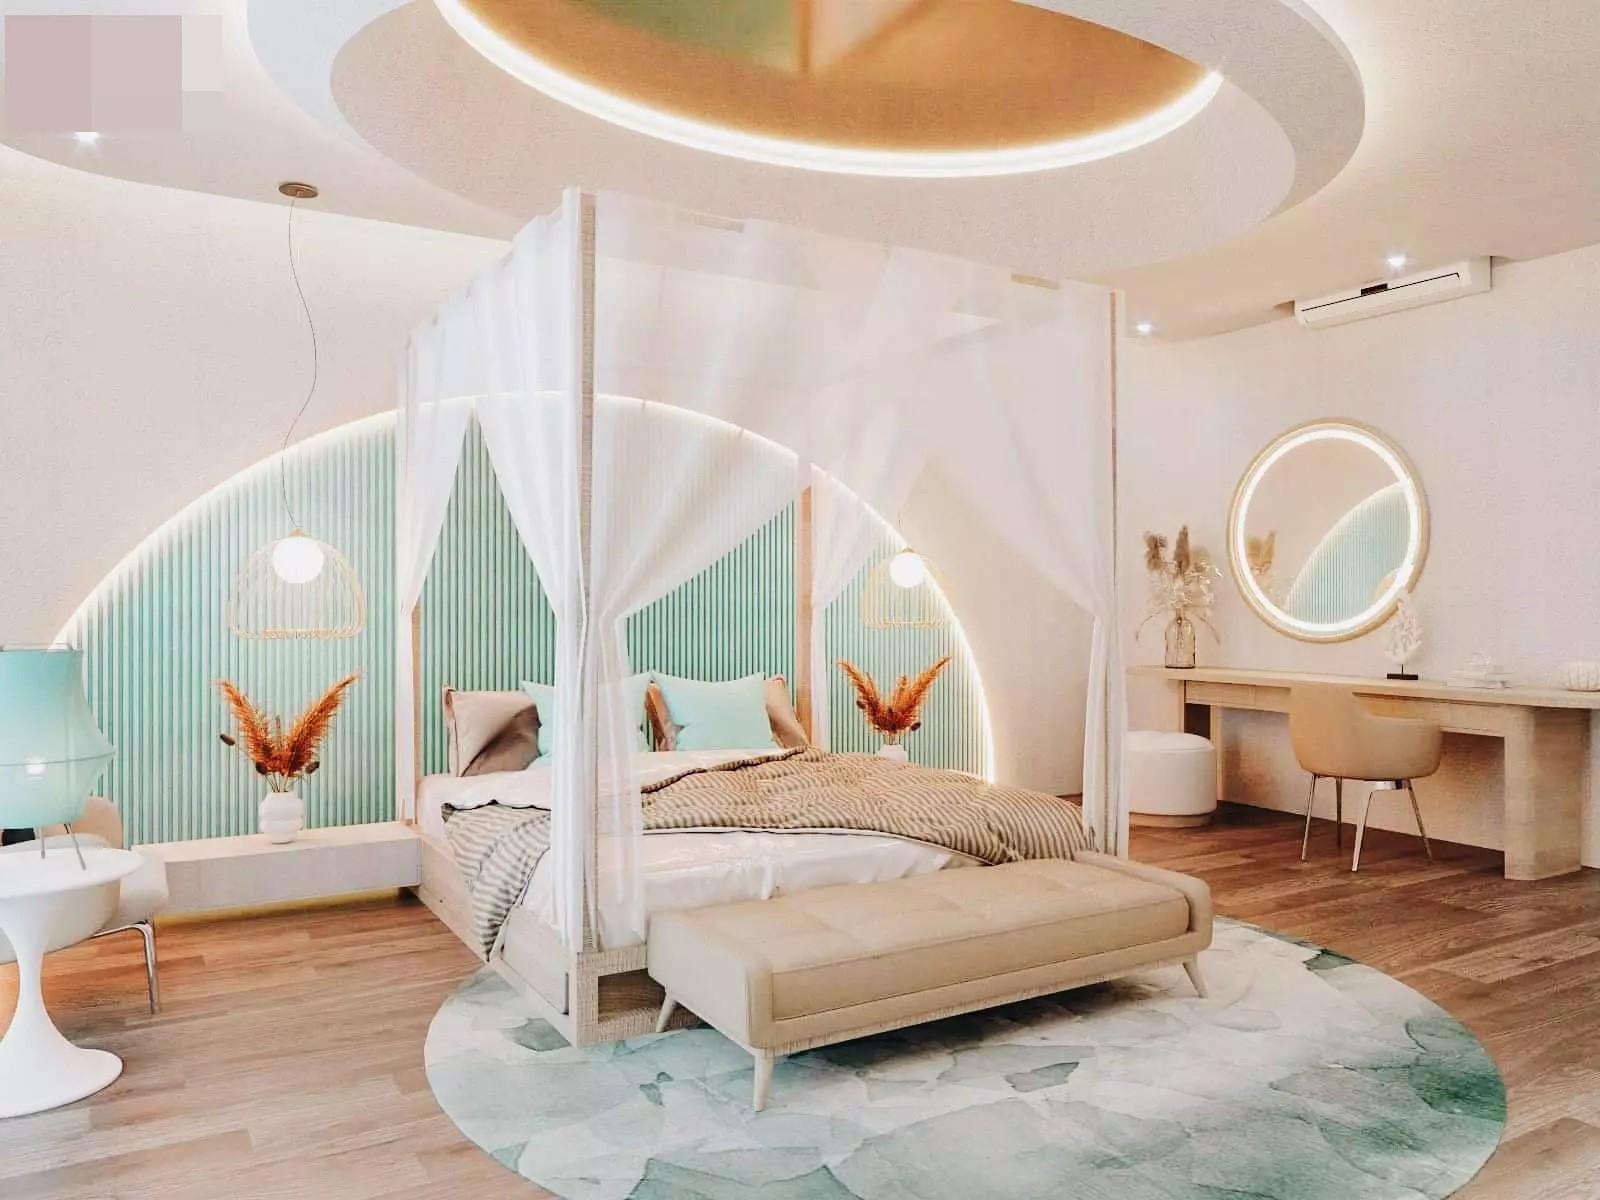 
Phòng ngủ chính tiện nghi và rộng rãi, tiện nghi, thiết kế giường có mành rèm mang cảm giác như đang ở trong khu nghỉ dưỡng
